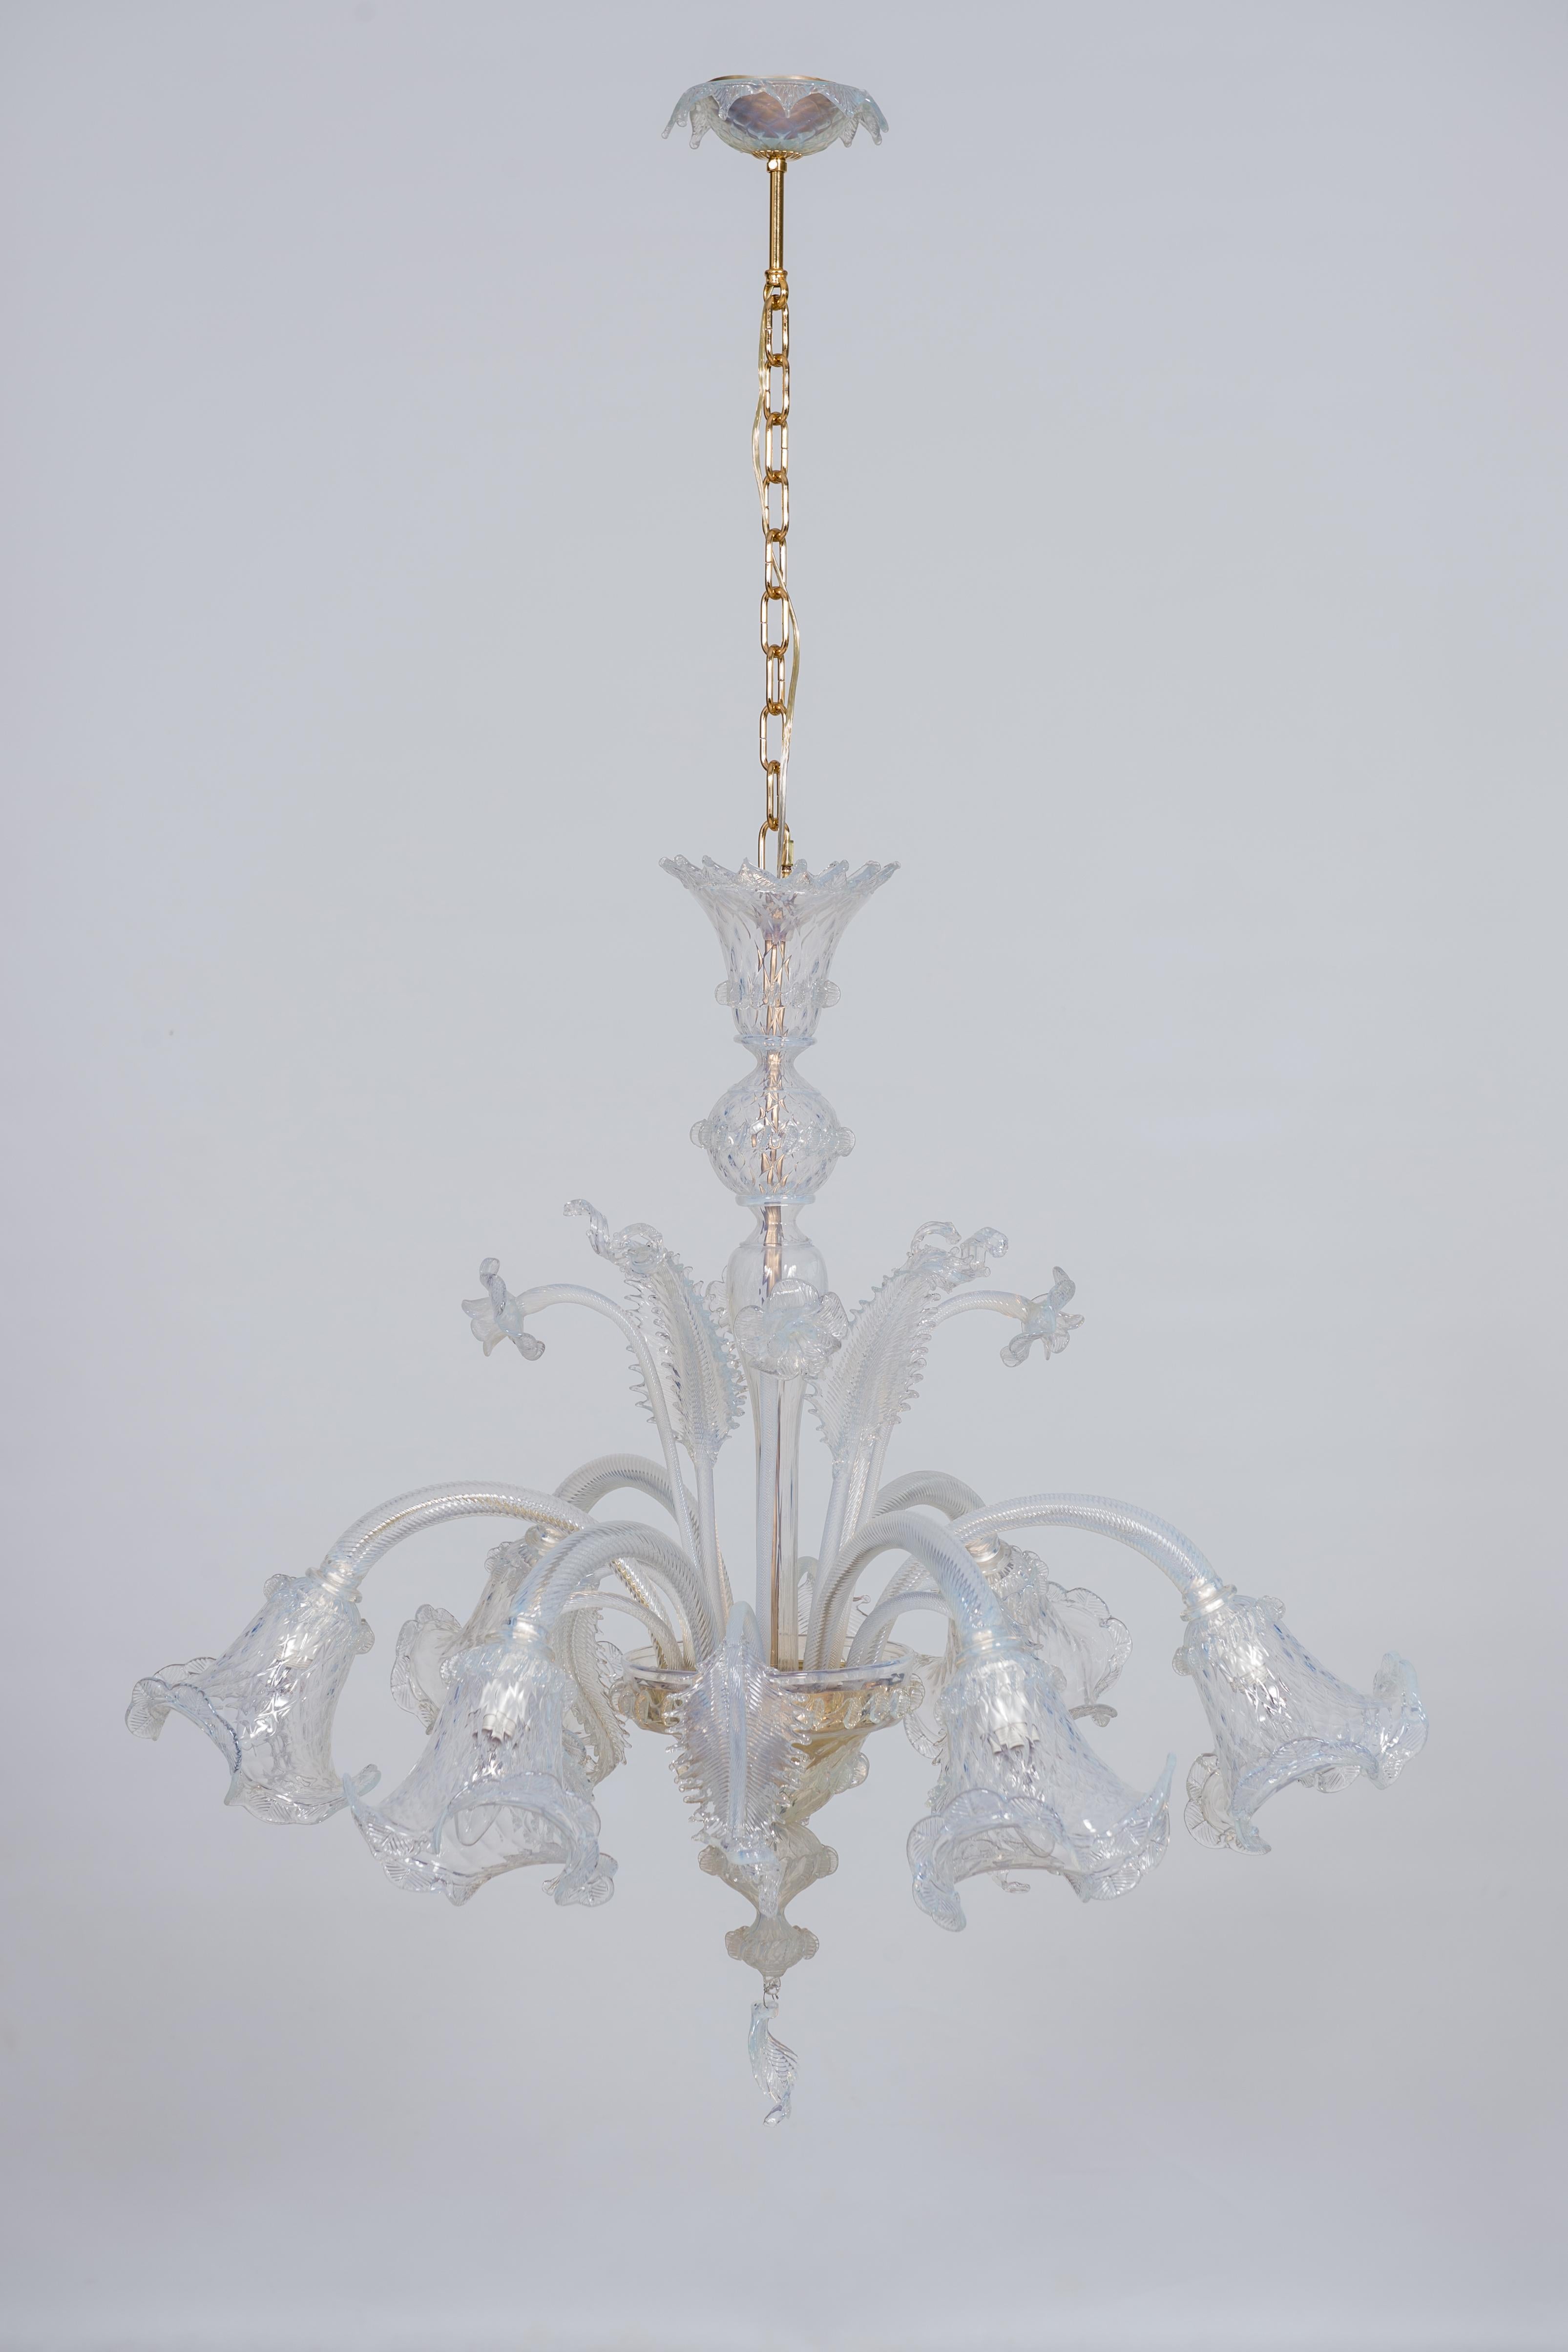 Cet exquis lustre en opaline, fabriqué à la main sur l'île de Murano dans les années 1960 (région de Venise, Italie), se distingue par ses décorations florales colorées qui virent au bleu clair. Six bras opalins munis d'ampoules dépassent du lustre